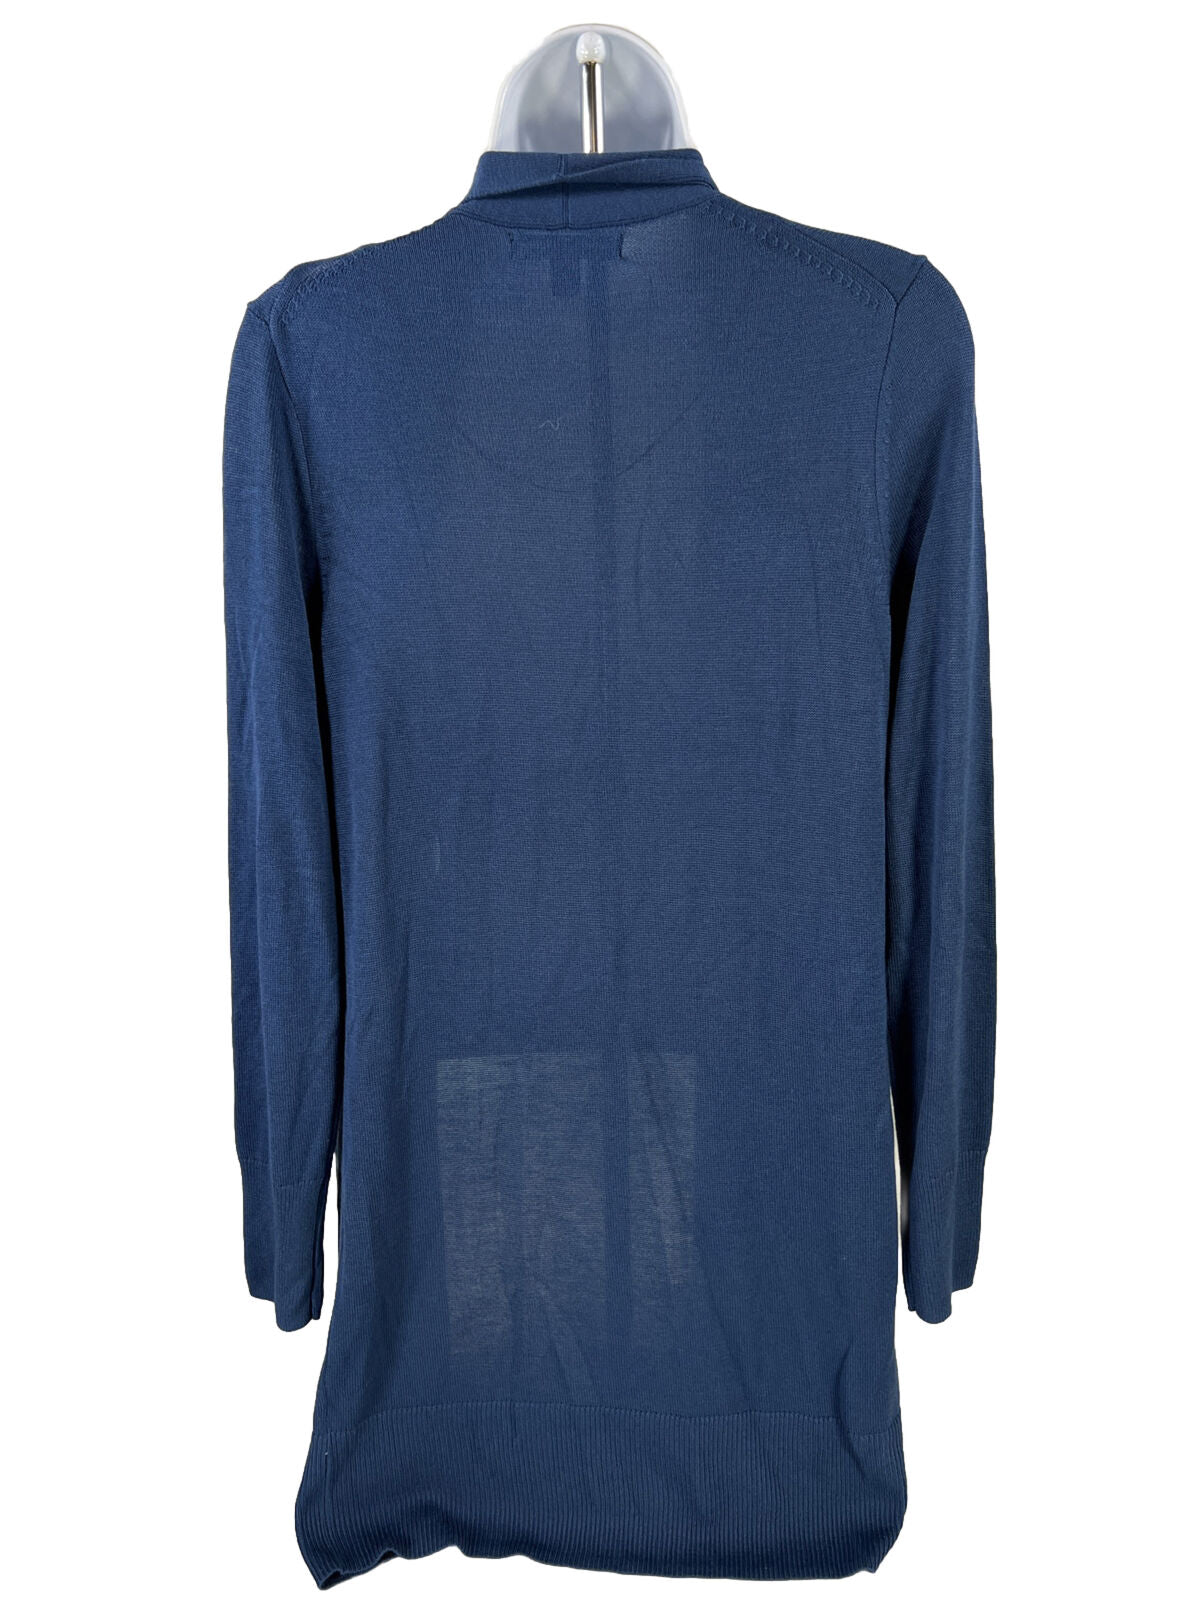 Banana Republic Women's Blue Long Length Cardigan Sweater - XS